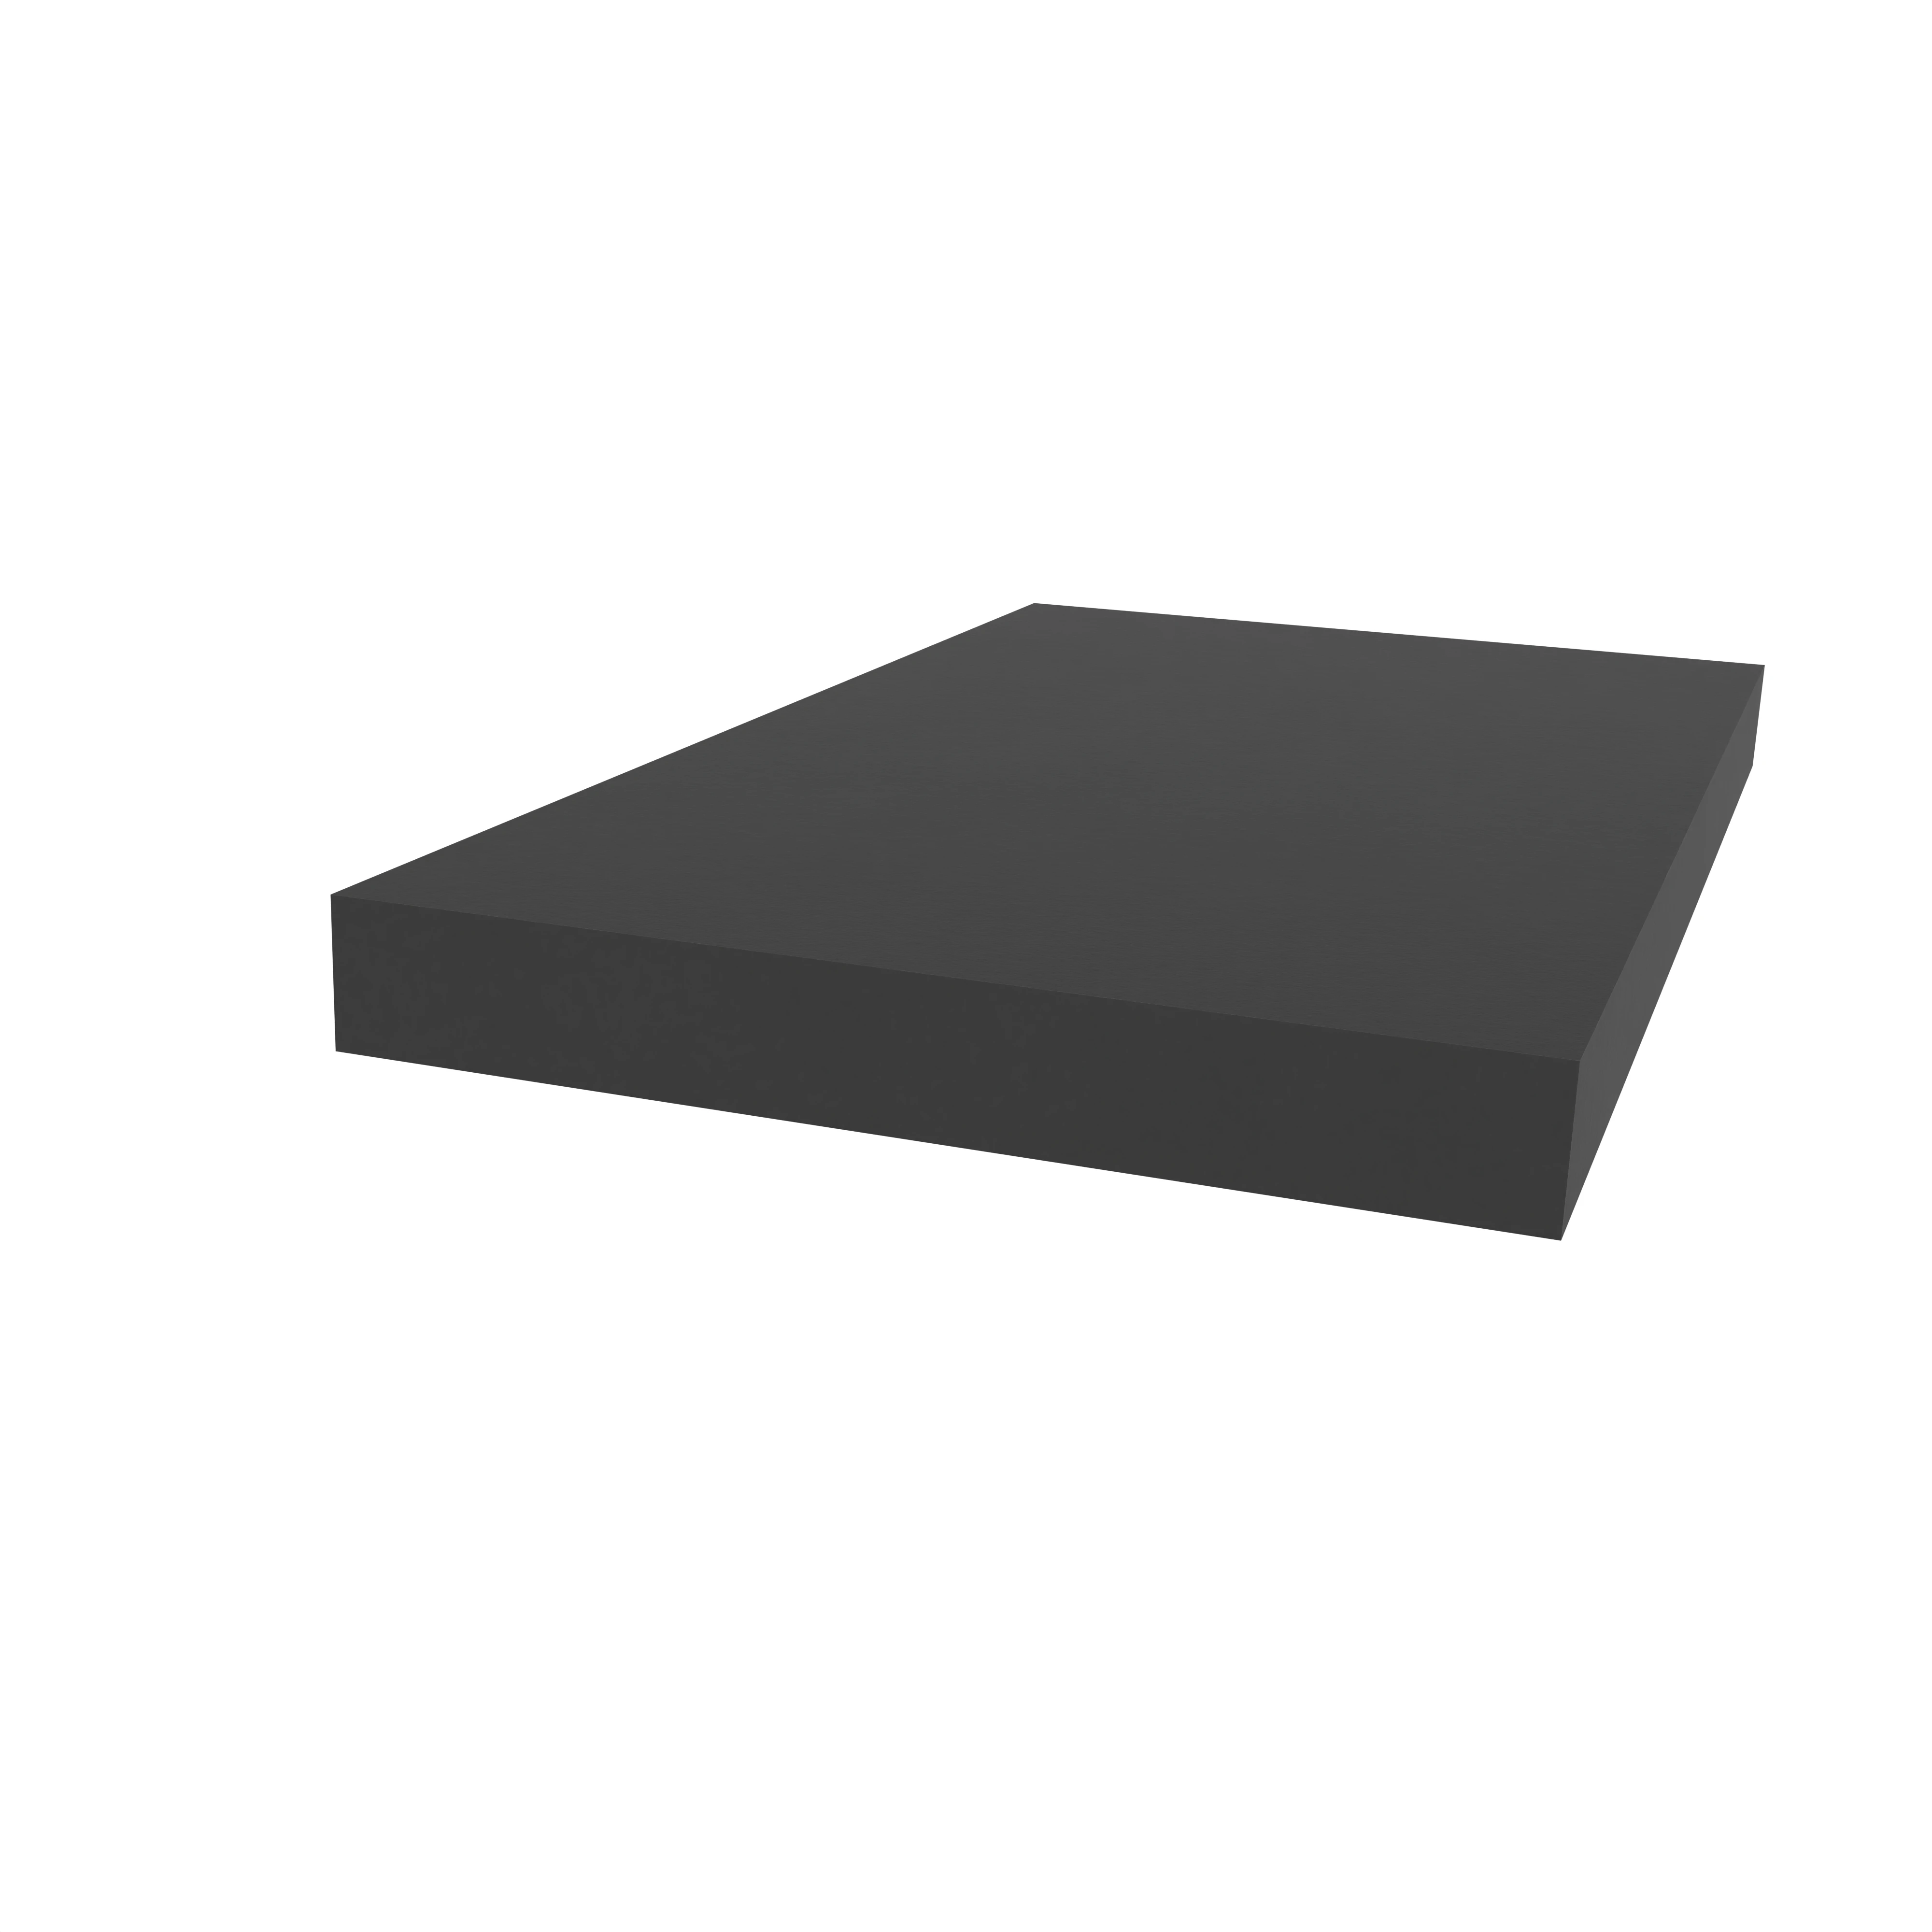 Moosgummidichtung vierkant | 30 mm Breite | Farbe: schwarz